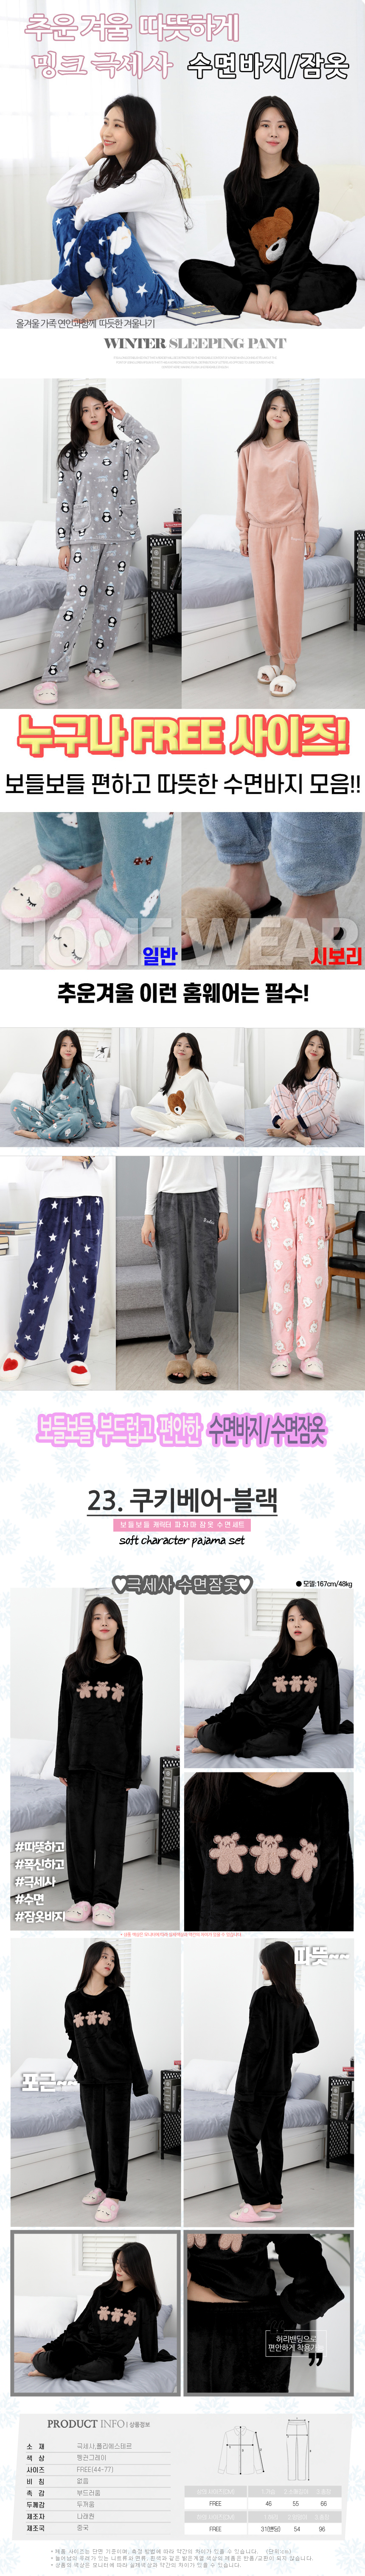 sleeping_pajamas_set_23.jpg